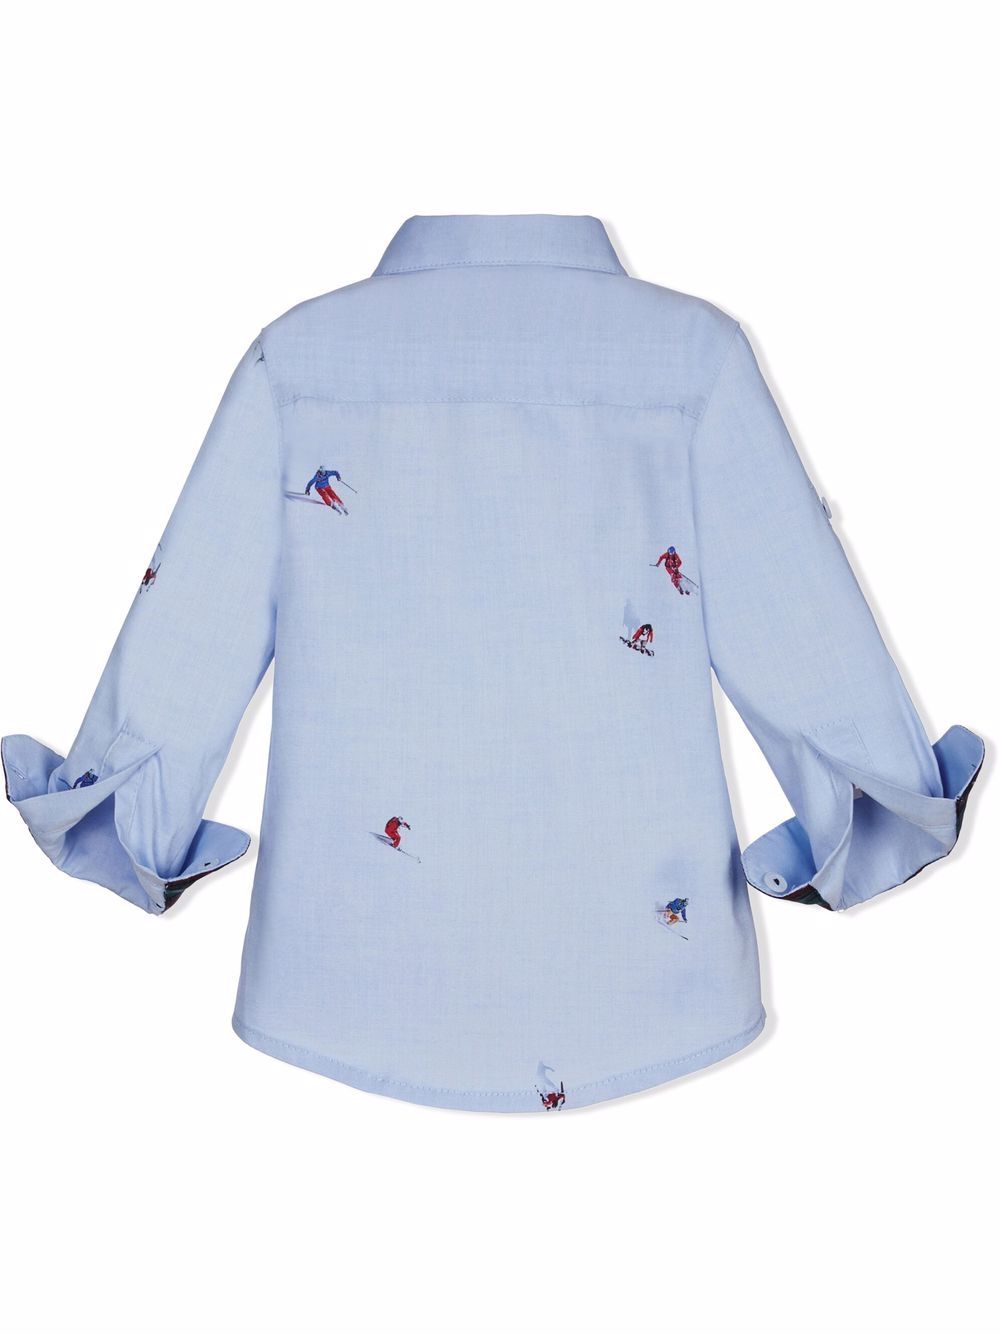 фото Lapin house рубашка с принтом и подвернутыми манжетами